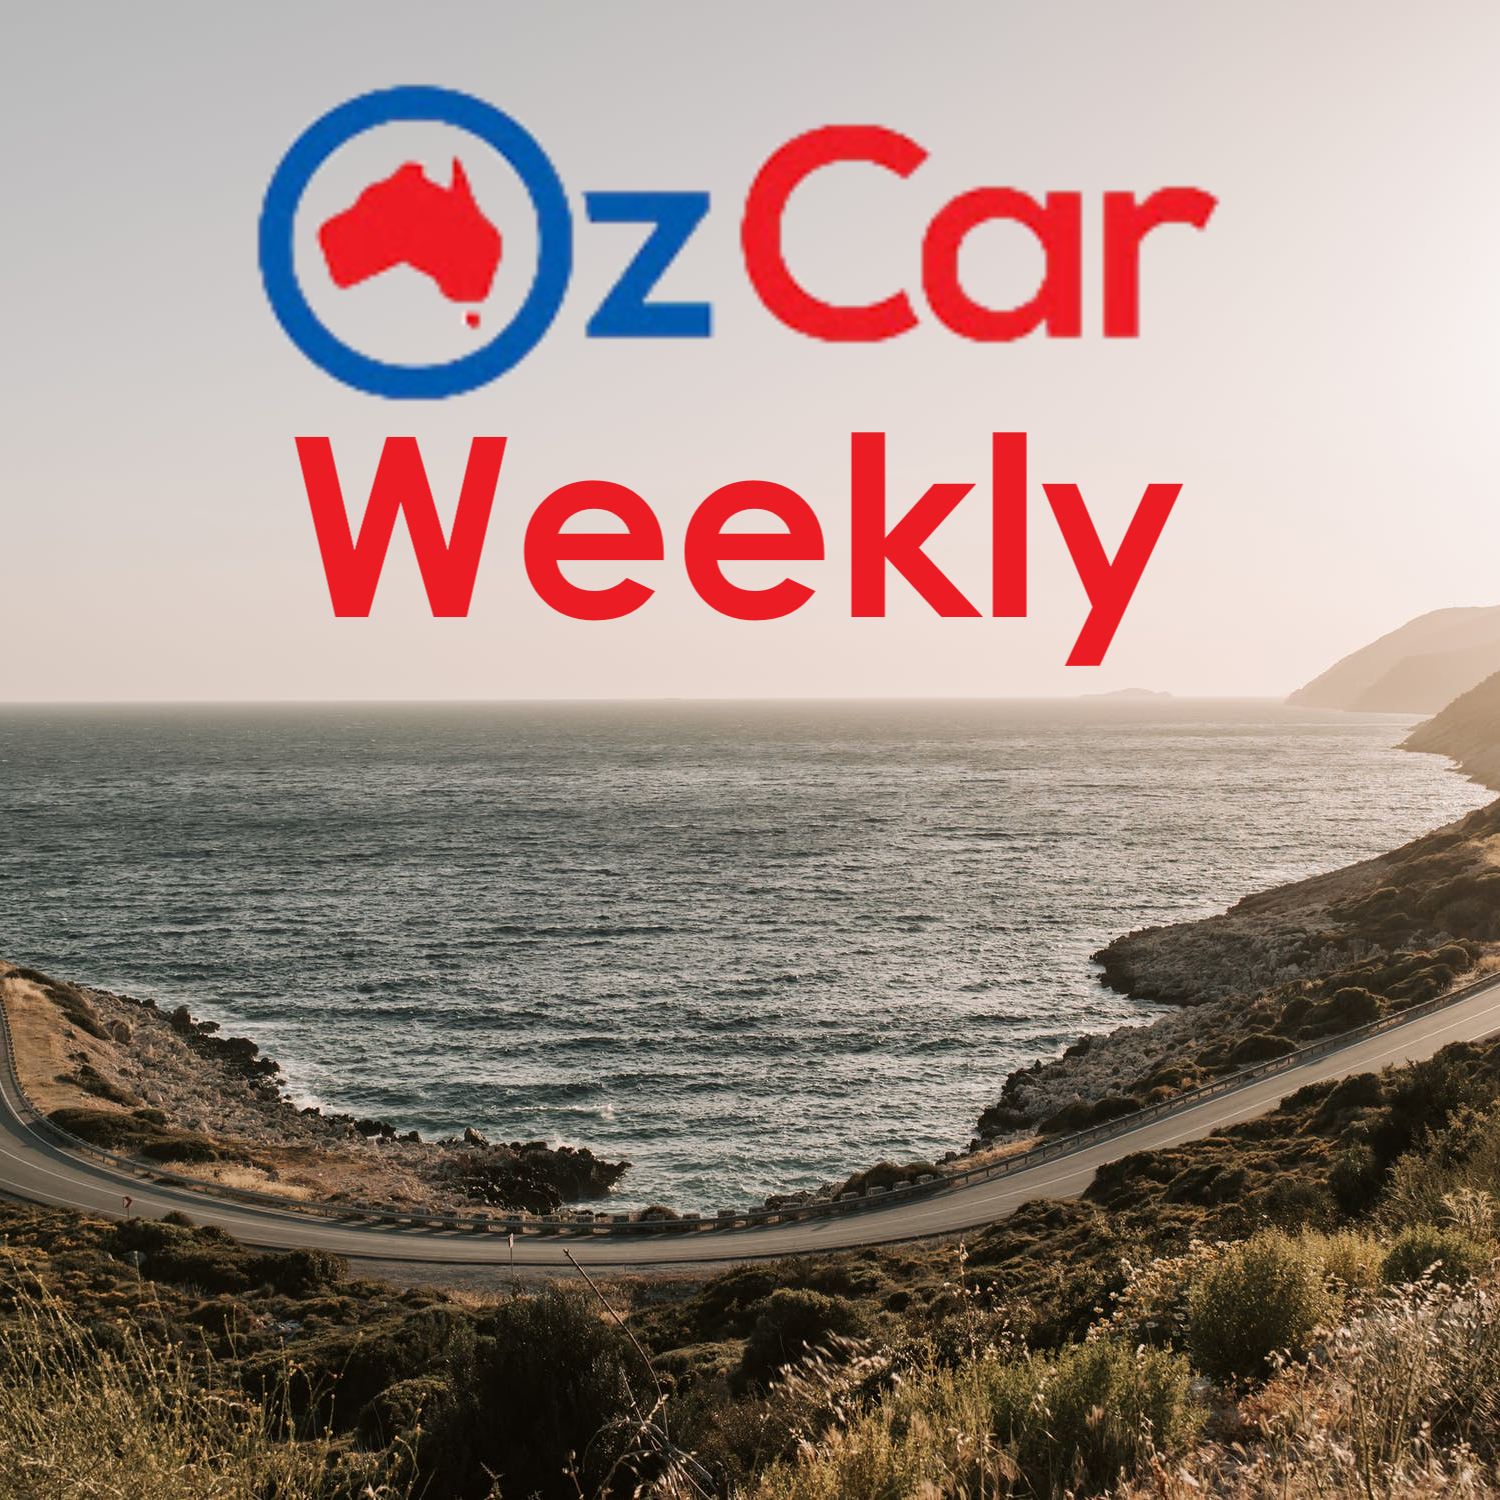 OzCar Weekly Episode 26